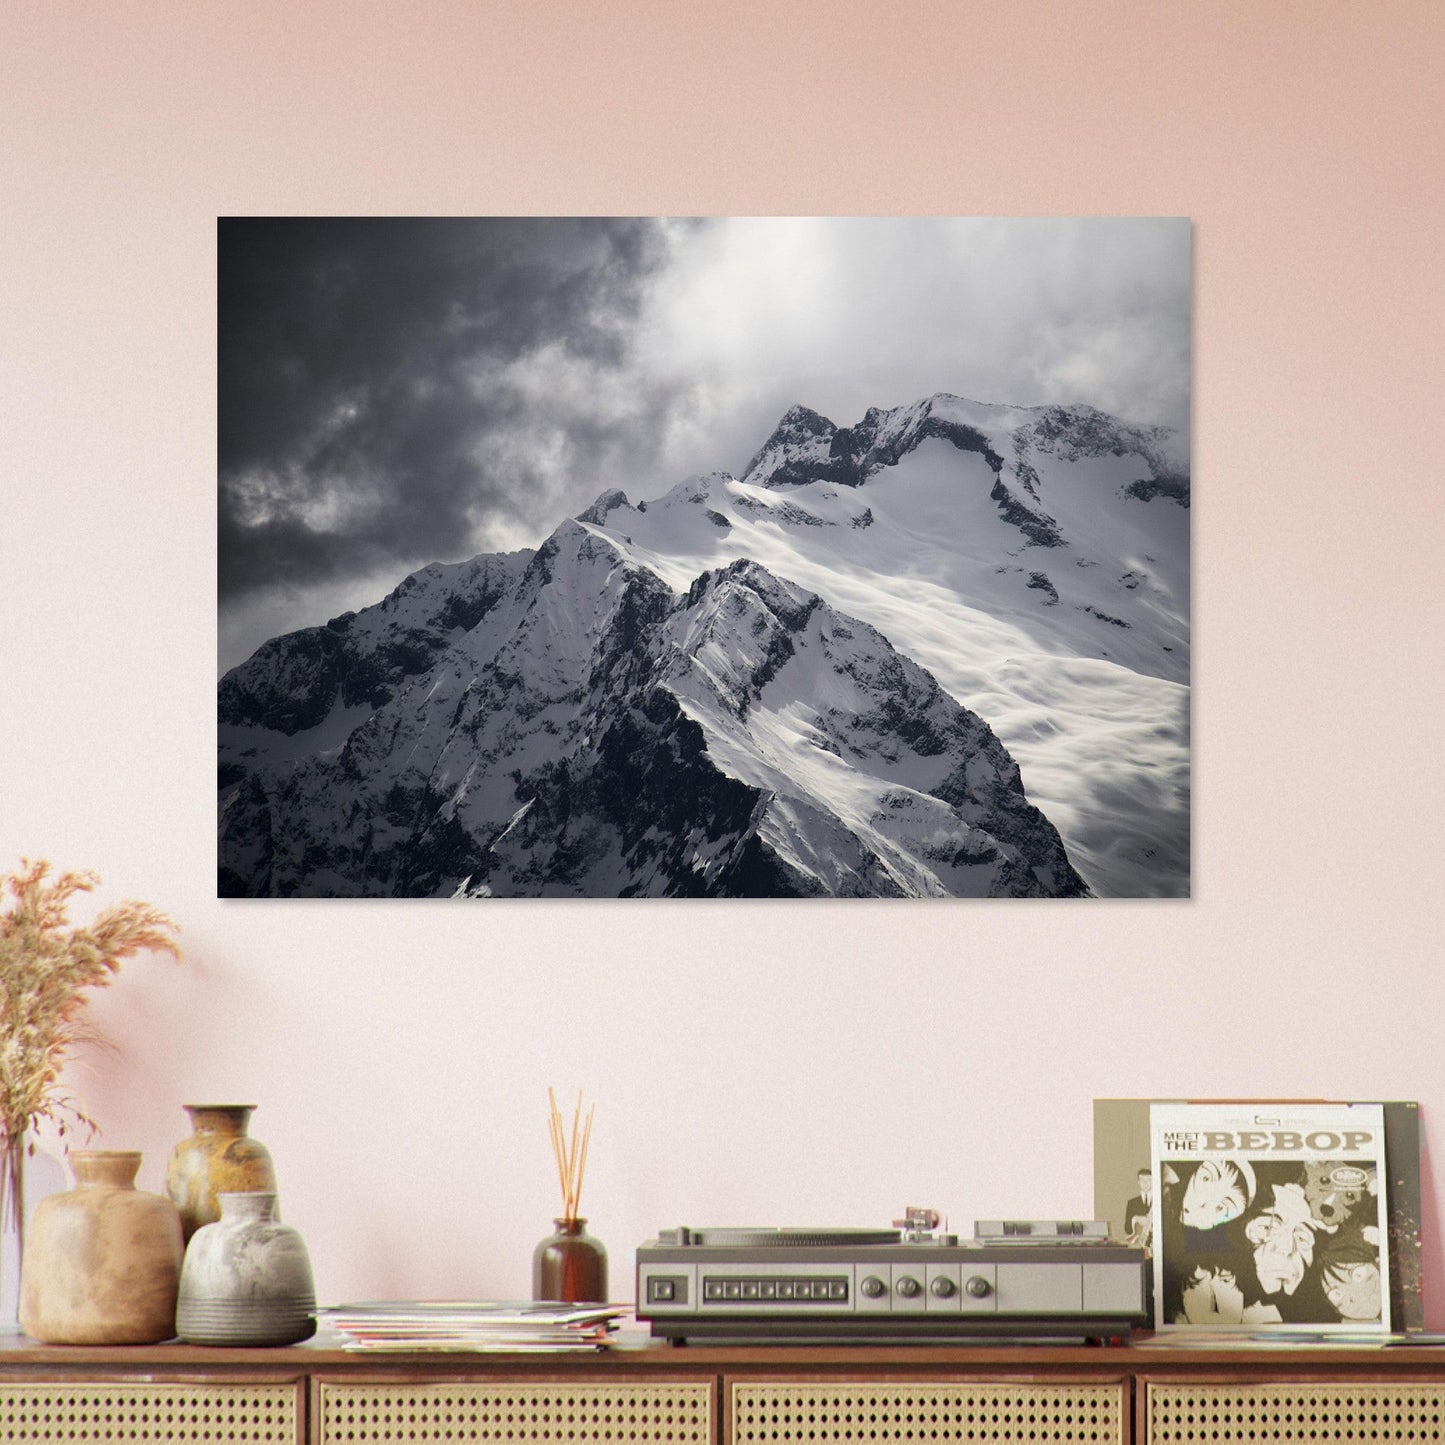 Vente Photo du Pic Blanc, Alpe d'Huez - Noir & Blanc #1 - Tableau photo alu montagne